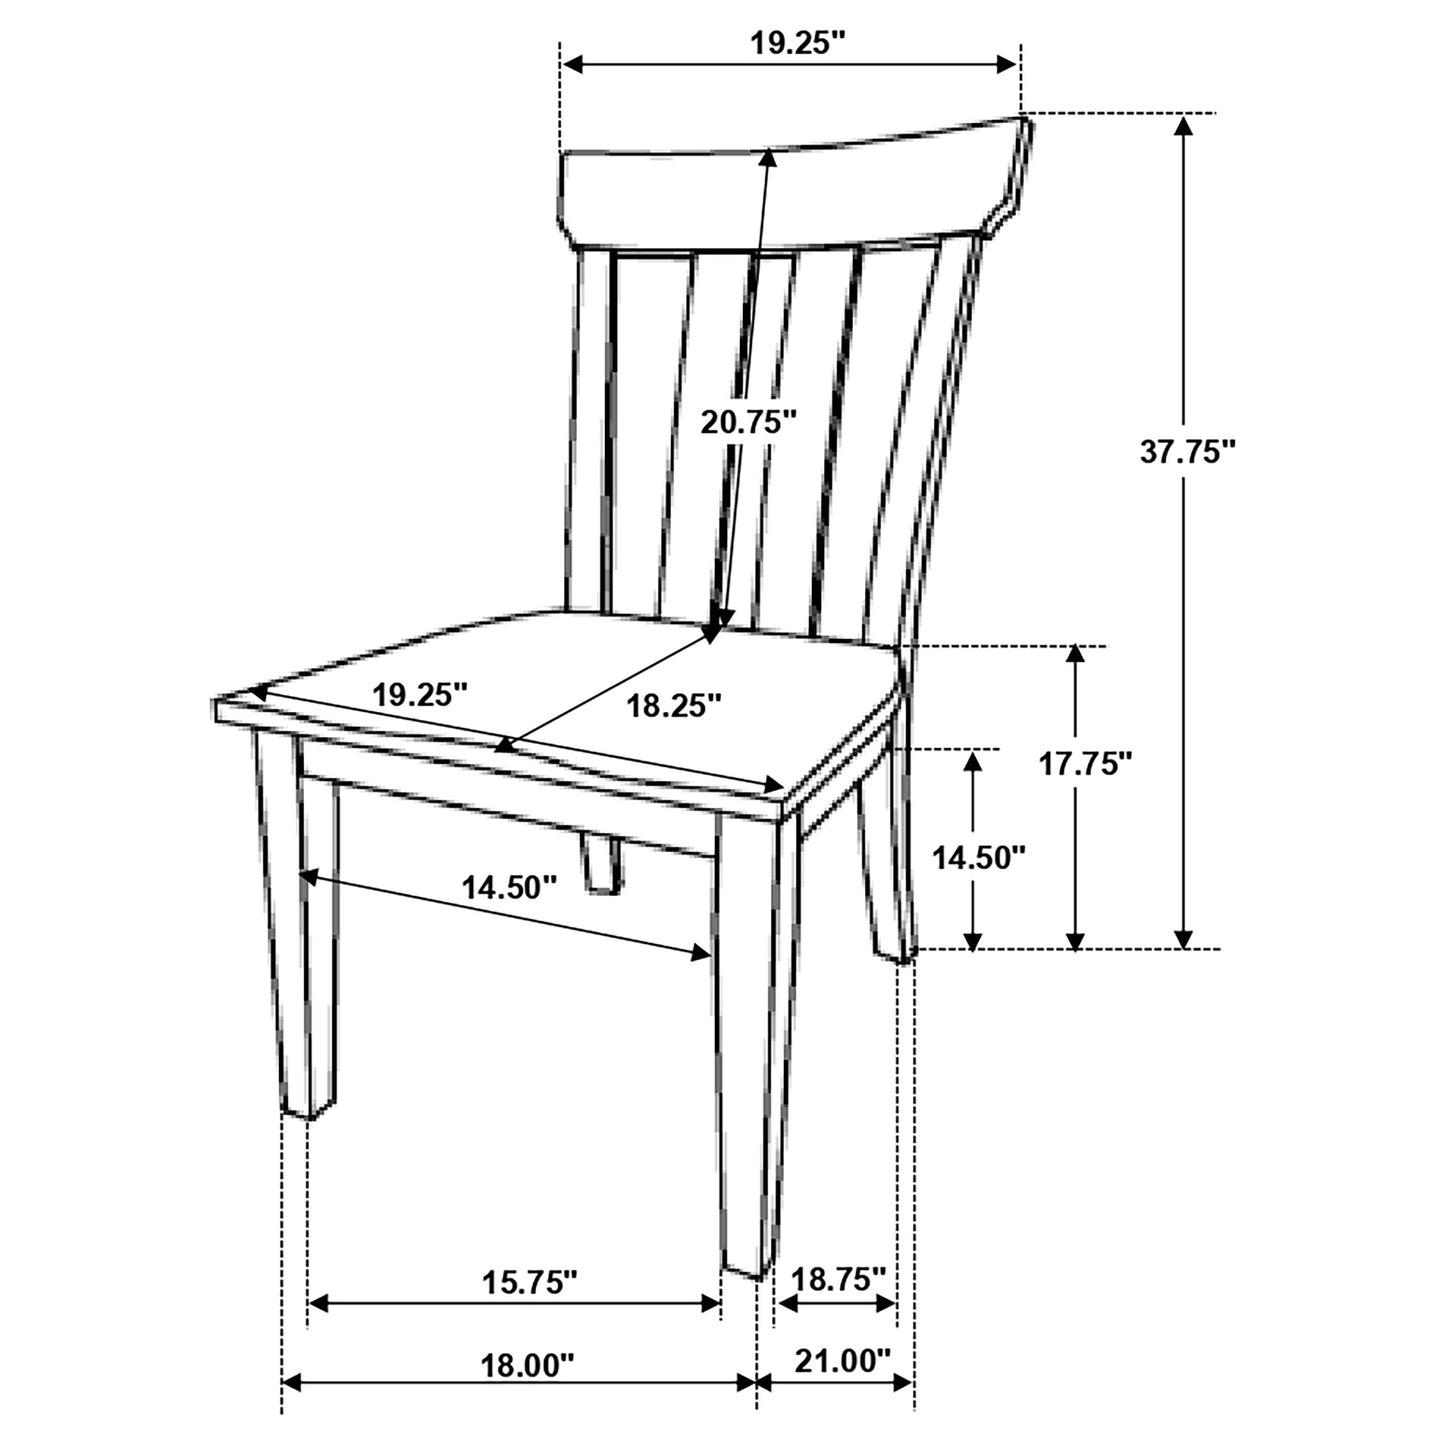 Reynolds Slat Back Dining Side Chair Brown Oak (Set of 2)